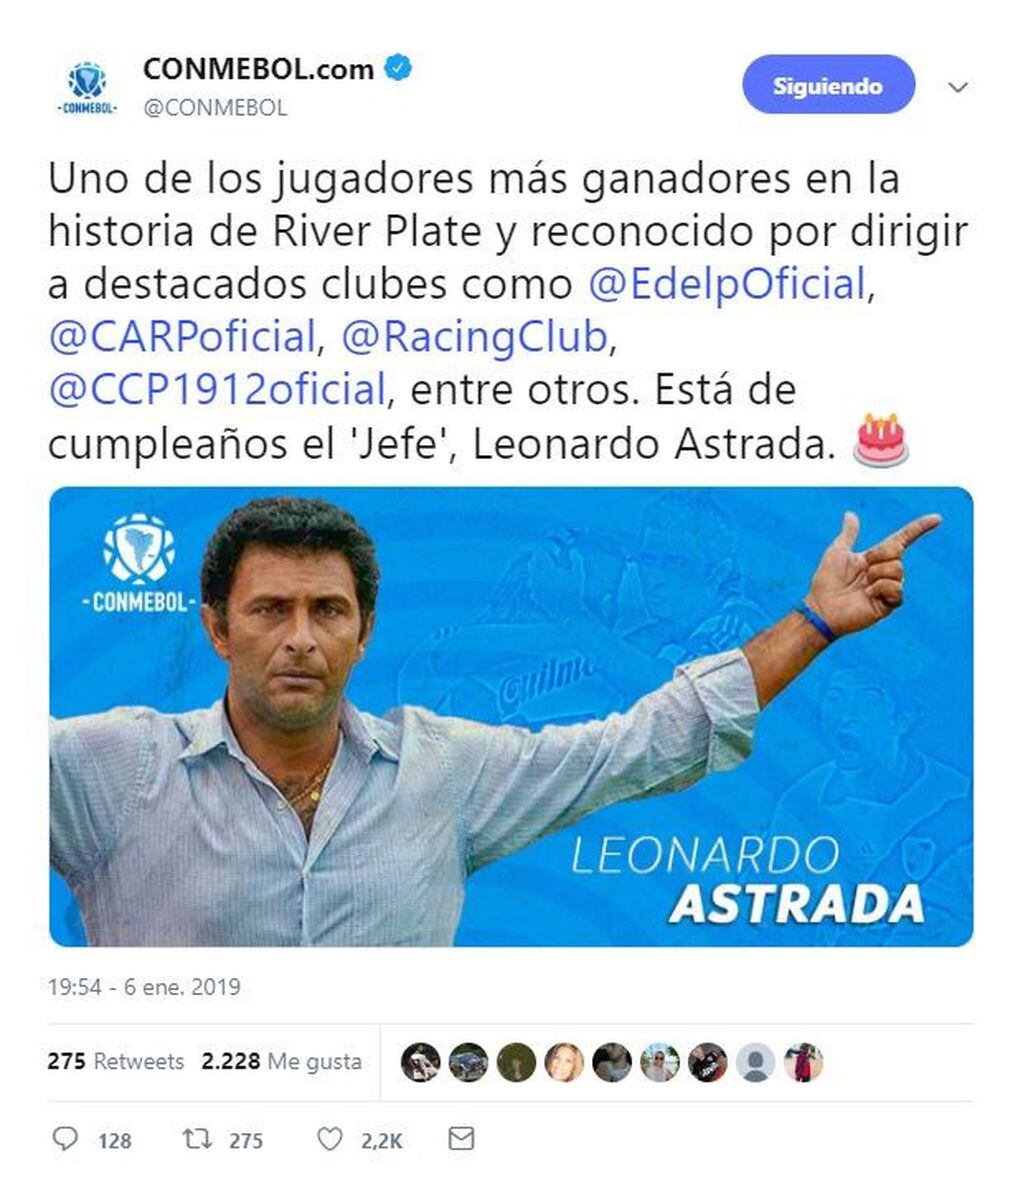 La Conmebol saludó a Leonardo Astrada por su cumpleaños y pasó un papelón (Twitter).